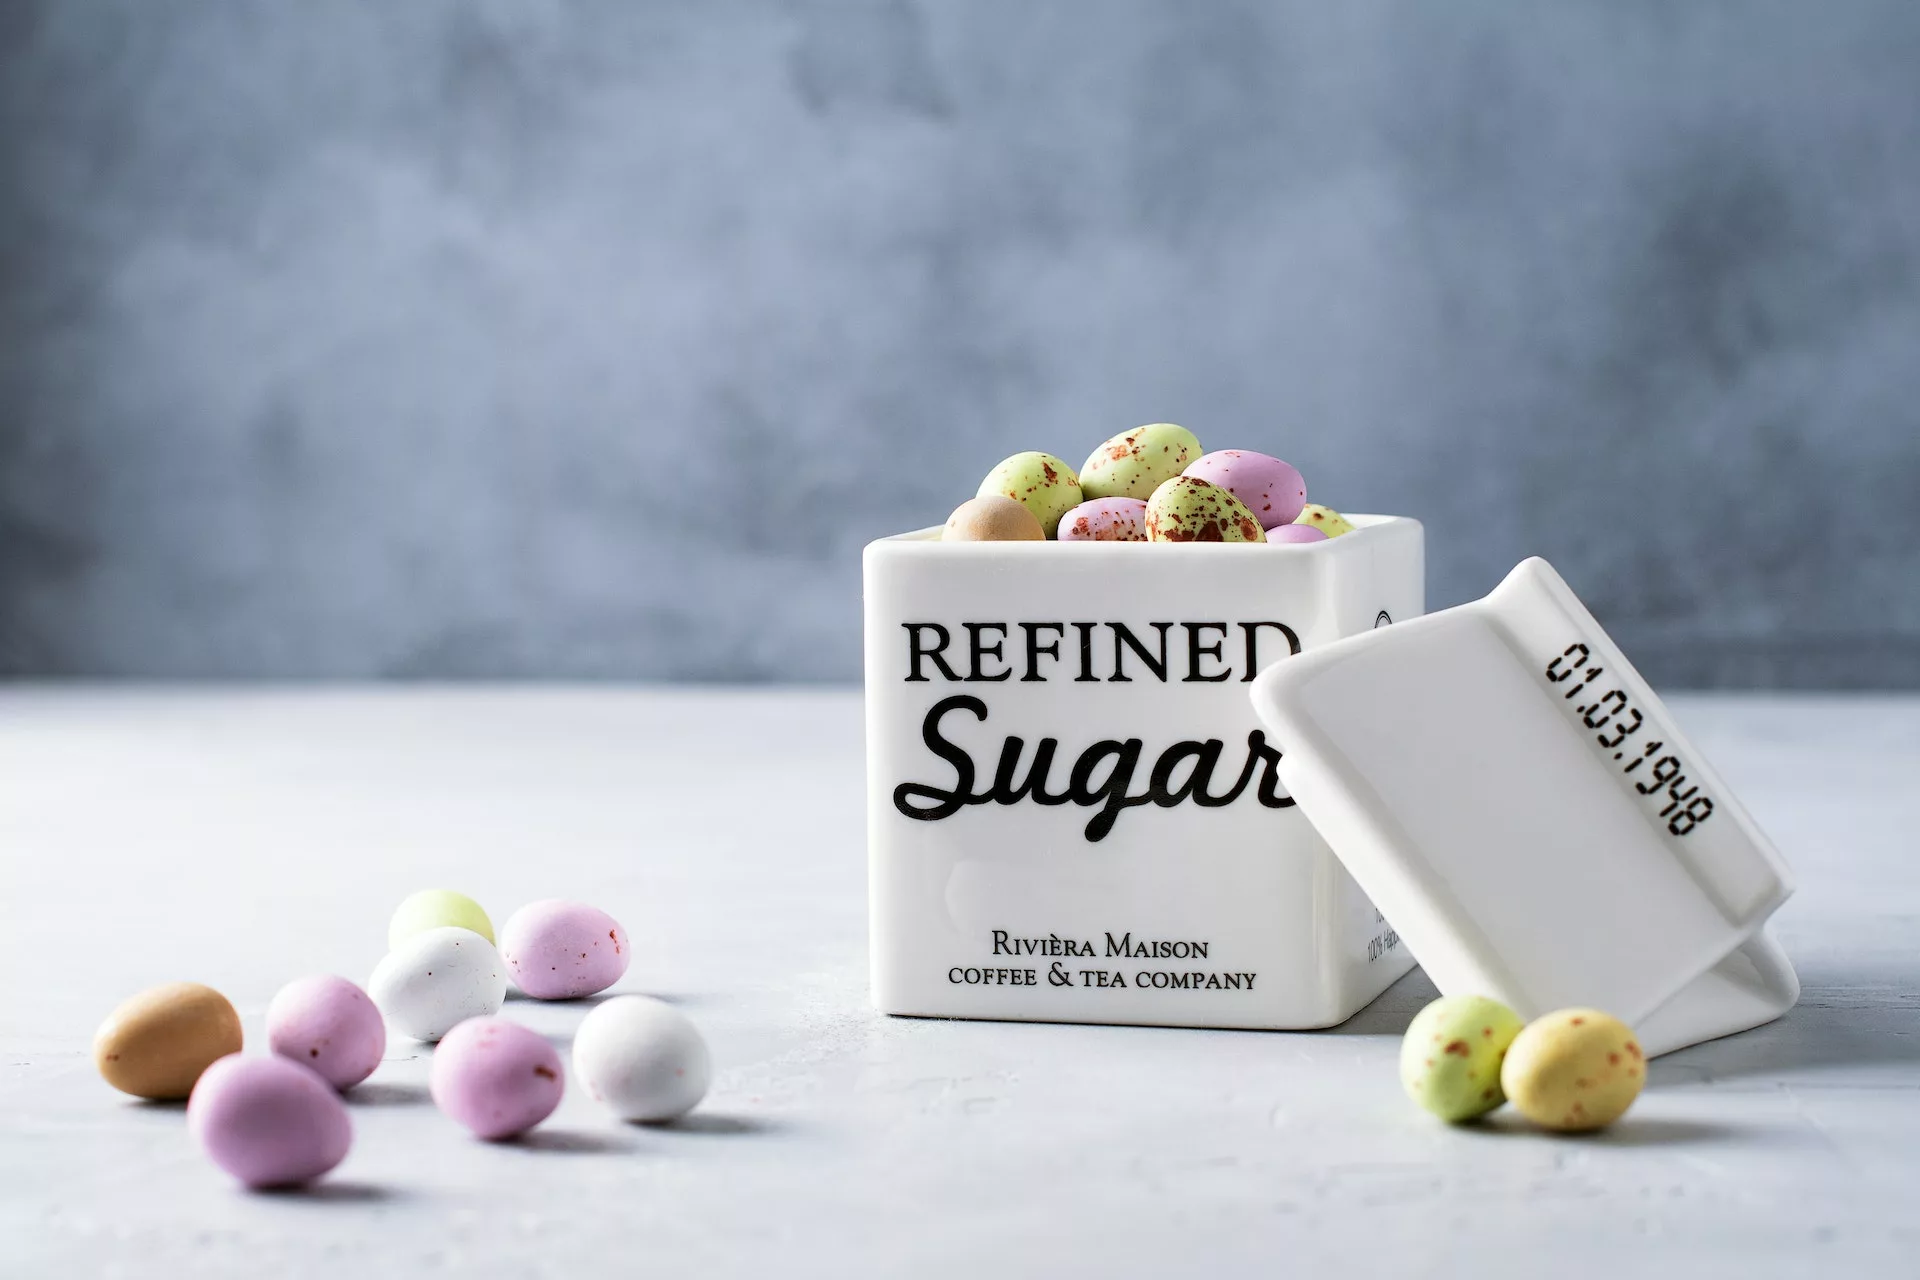 Refined sugar